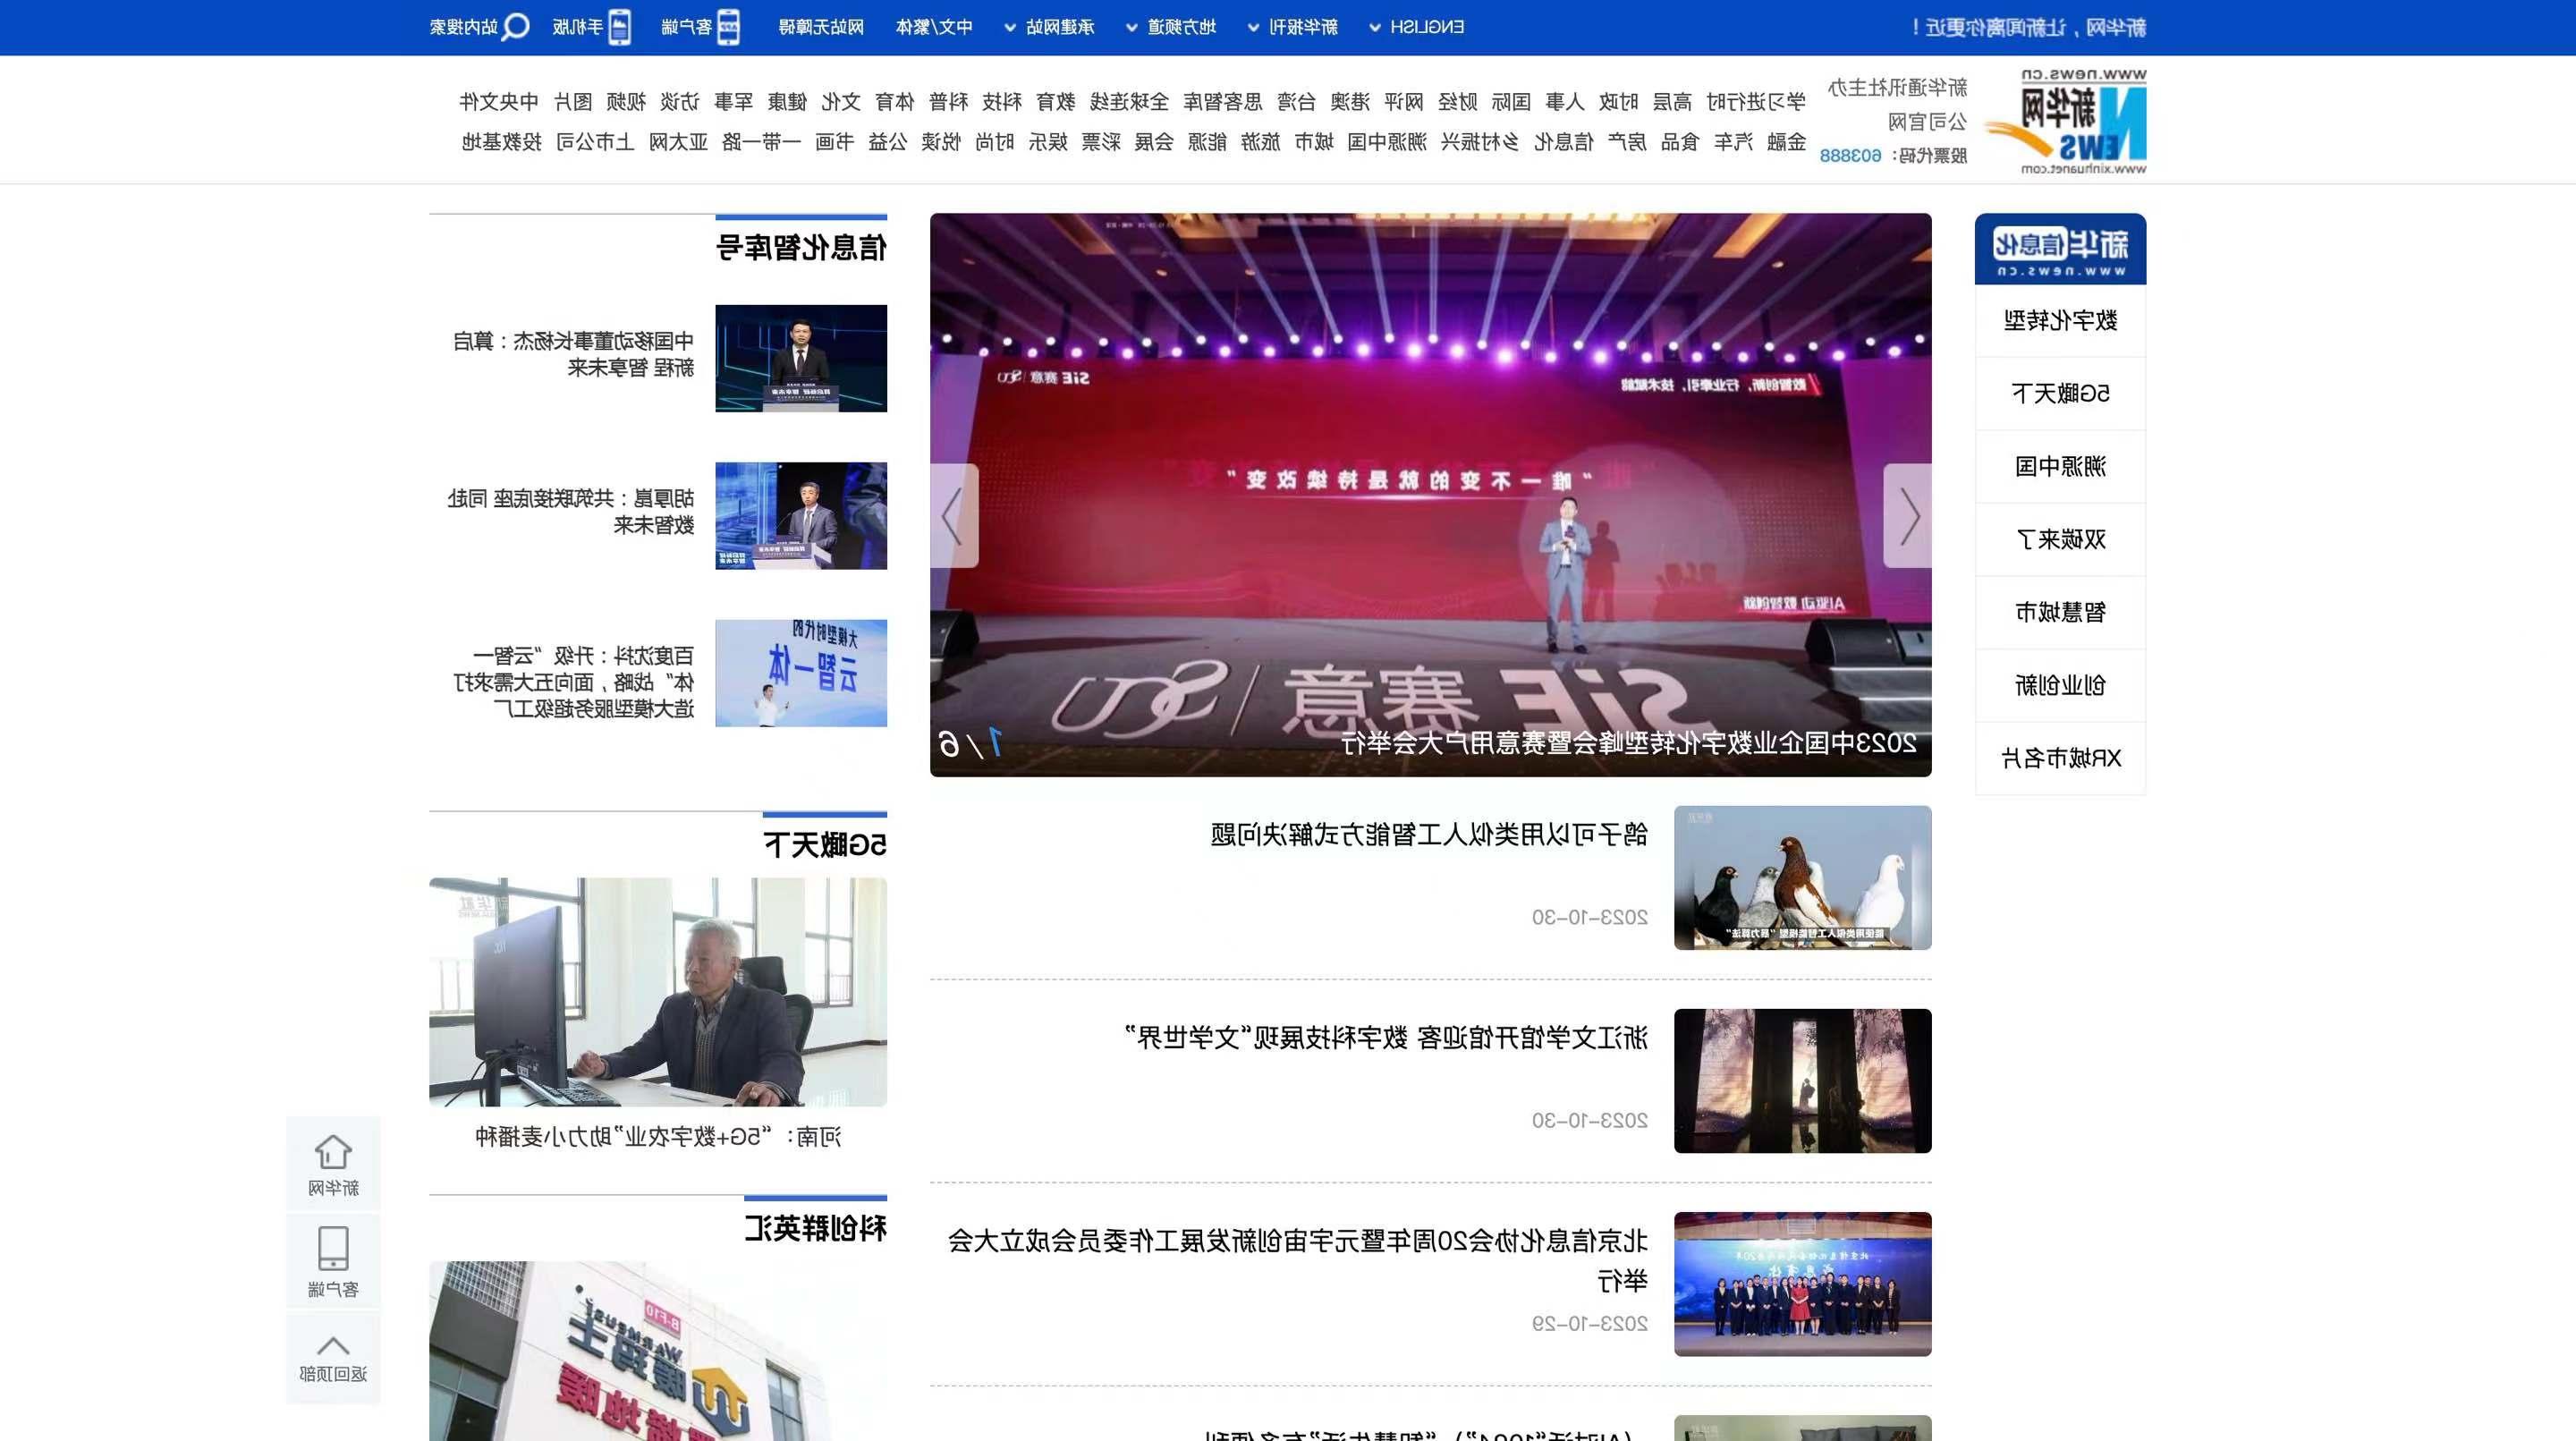 新华网|2023中国企业数字化转型峰会暨皇冠体育用户大会举行